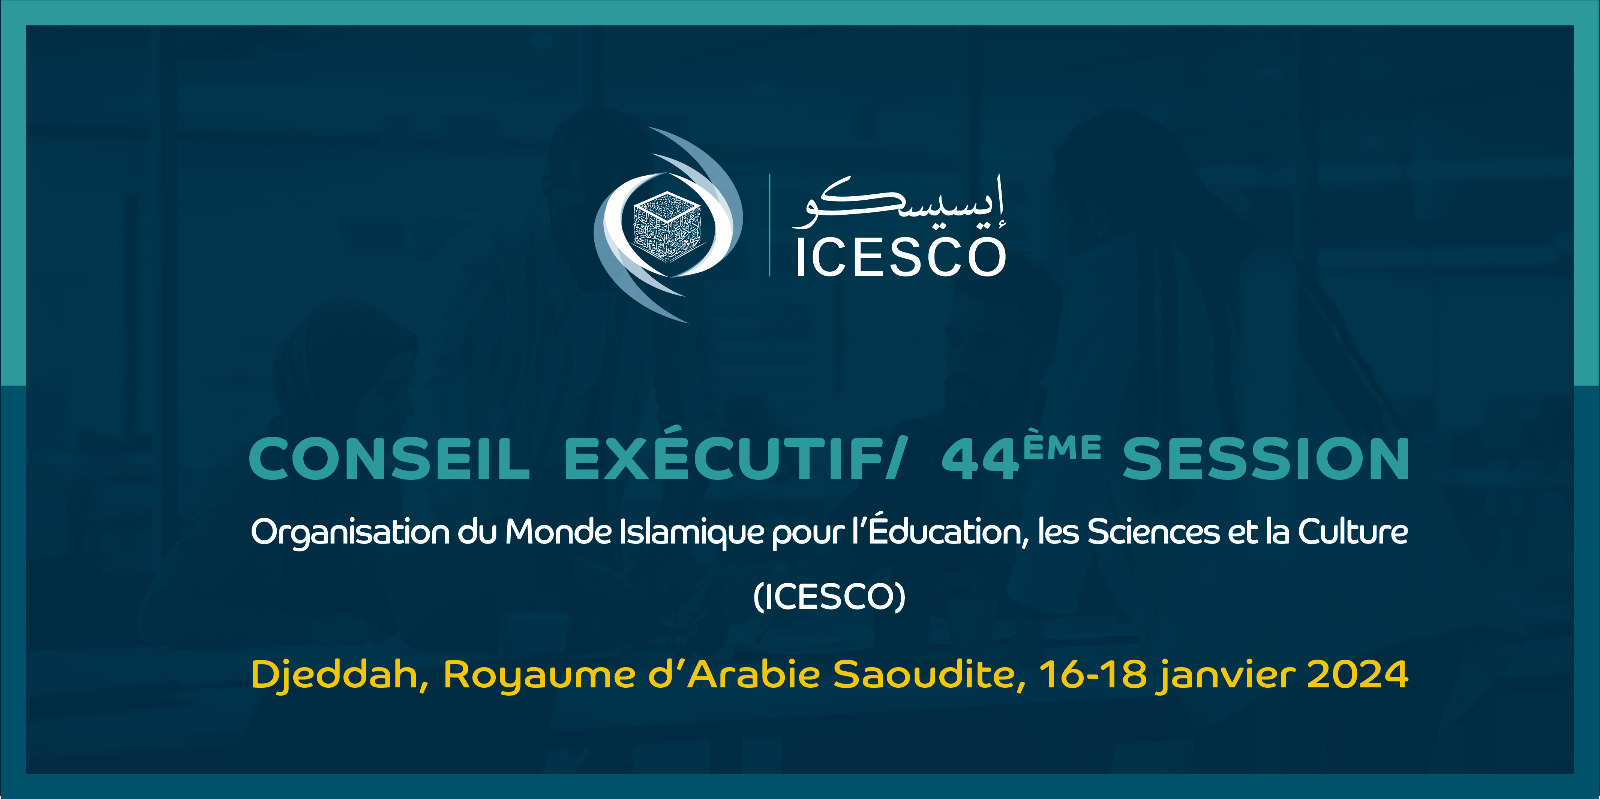 La semaine prochaine …l’Arabie Saoudite accueille la 44ème session du Conseil exécutif de l’ICESCO